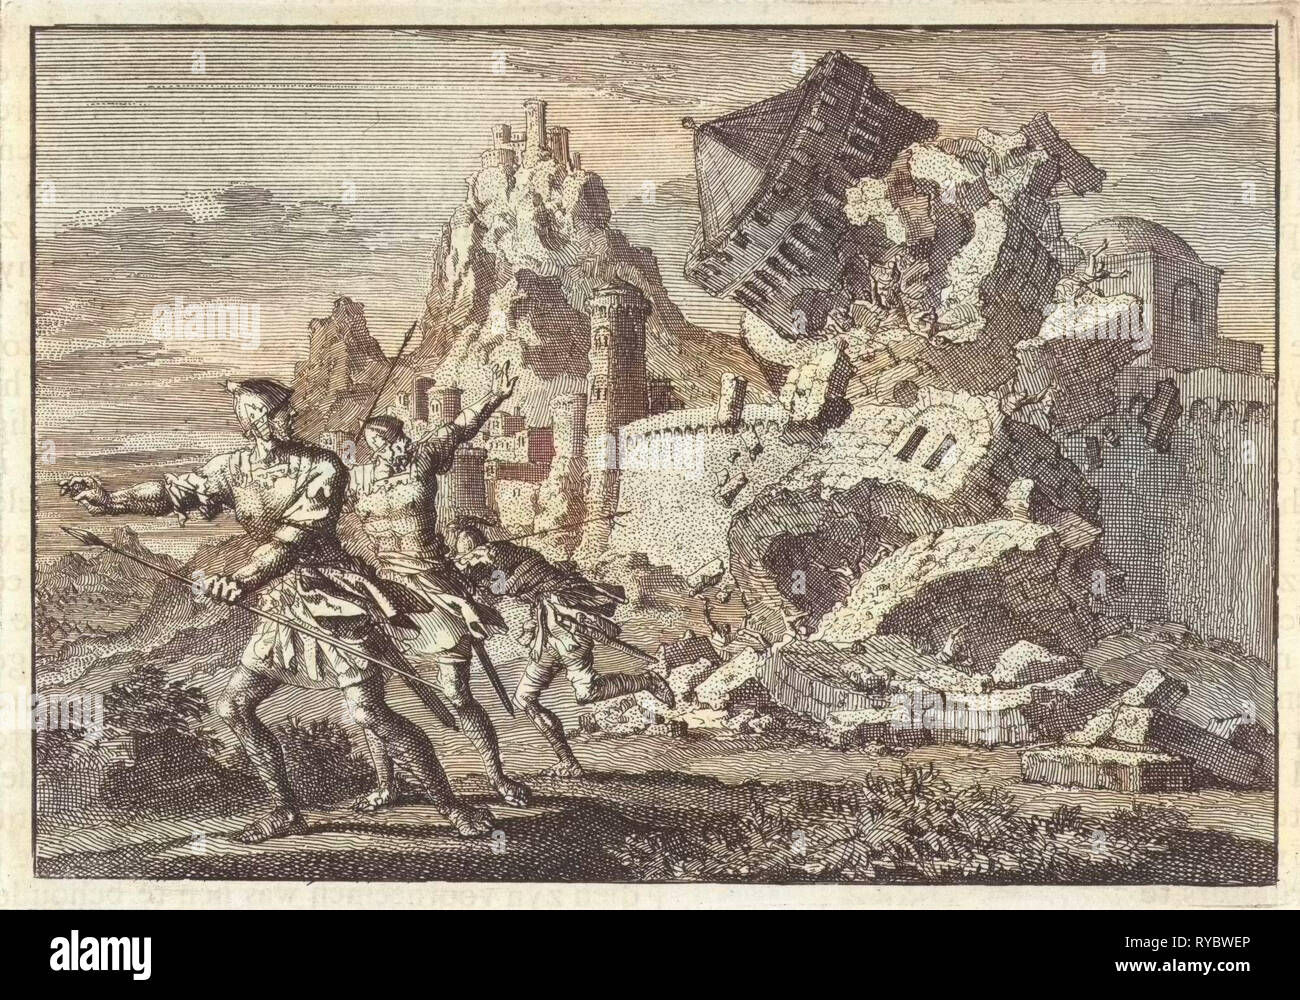 Römische Soldaten machen einen Turm an der Wand von Gamala Zusammenbruch durch eine Aushöhlung, Jan Luyken, Pieter Mortier, 1704 Stockfoto